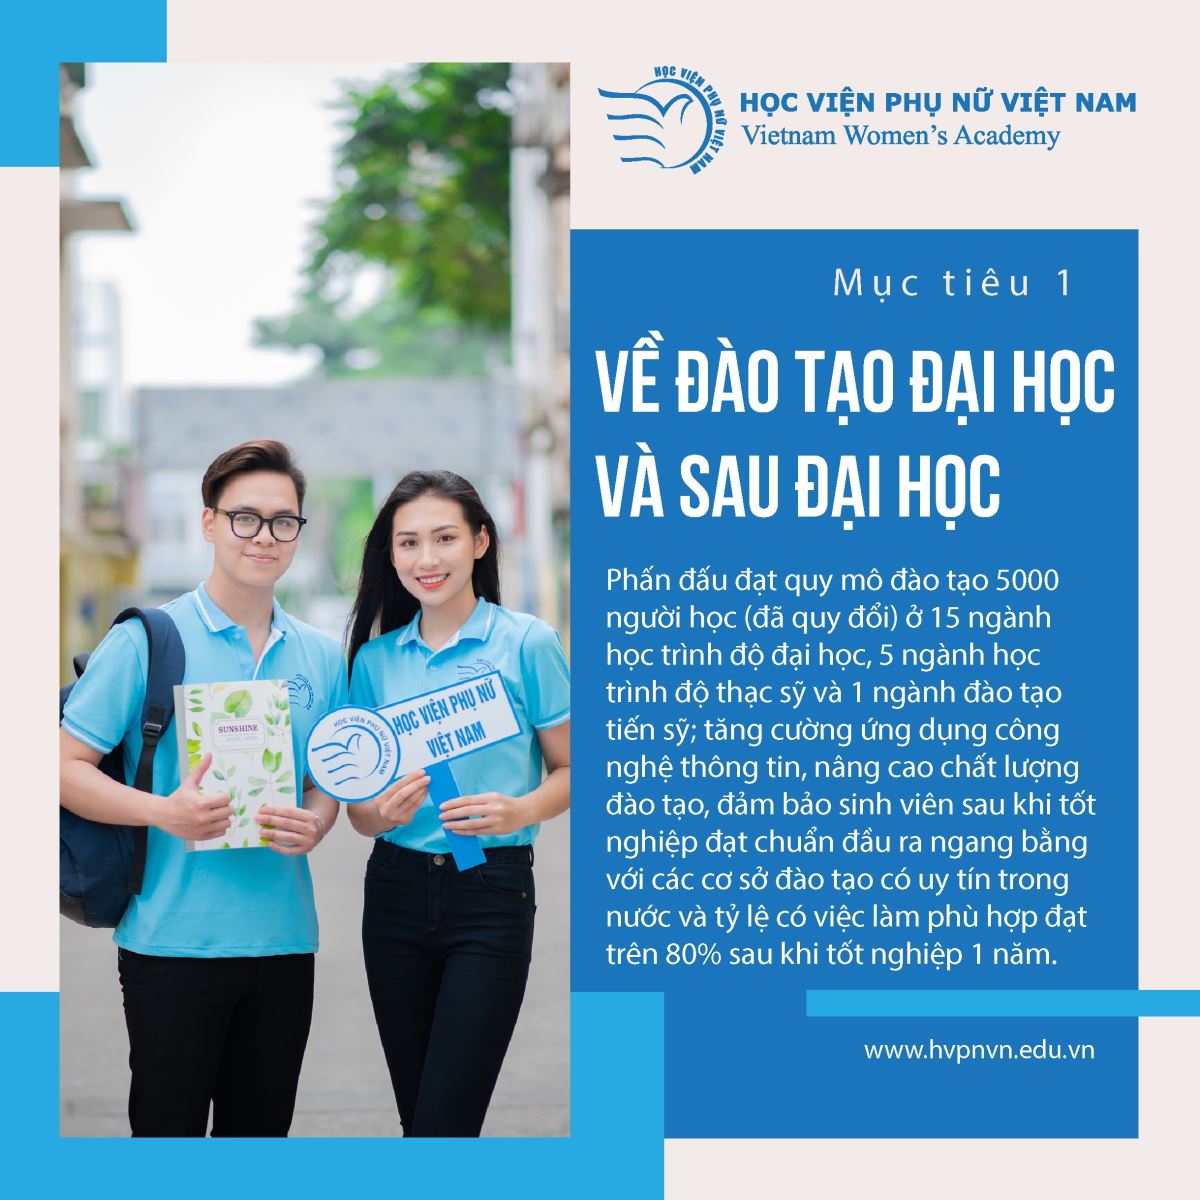 Mục tiêu phát triển của Học viện Phụ nữ Việt Nam giai đoạn 2021 - 2025